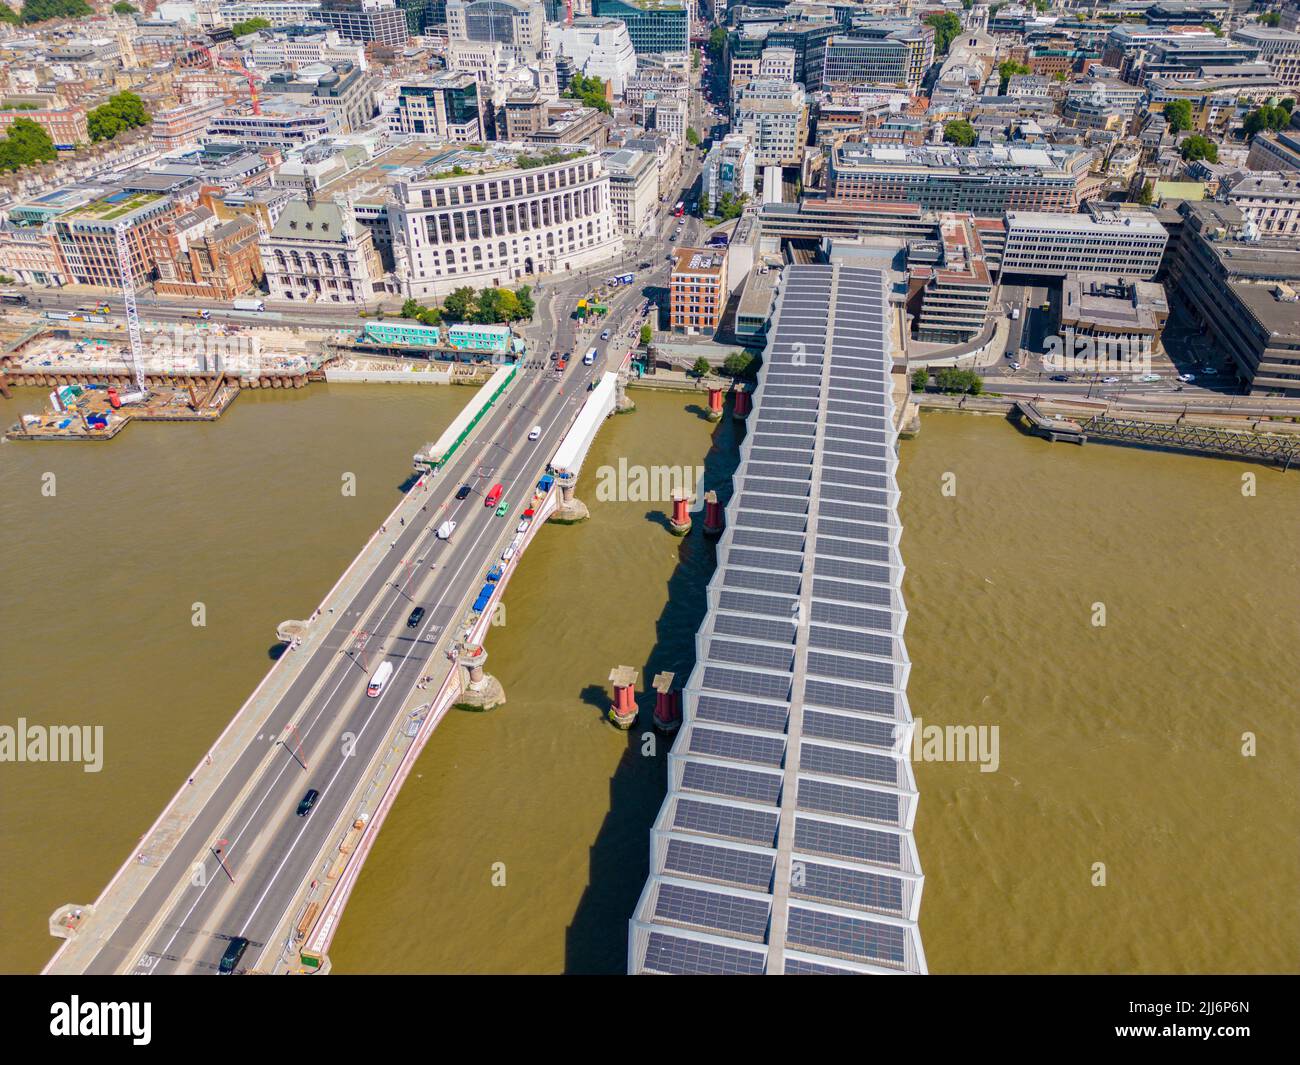 Blackfriars bridges on The River Thames London UK Stock Photo